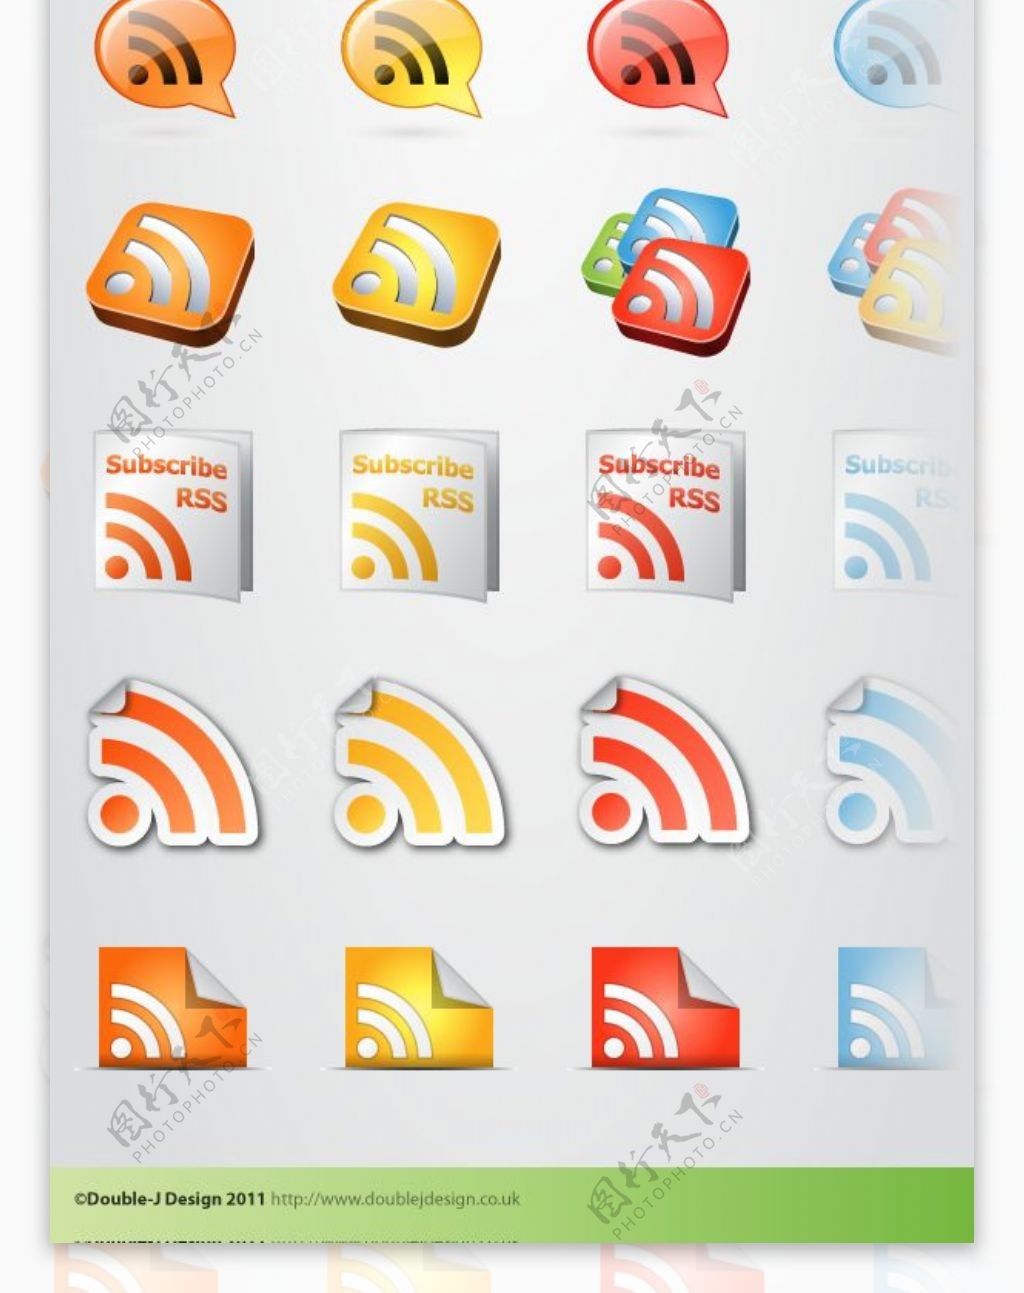 200超RSS的社交媒体图标包